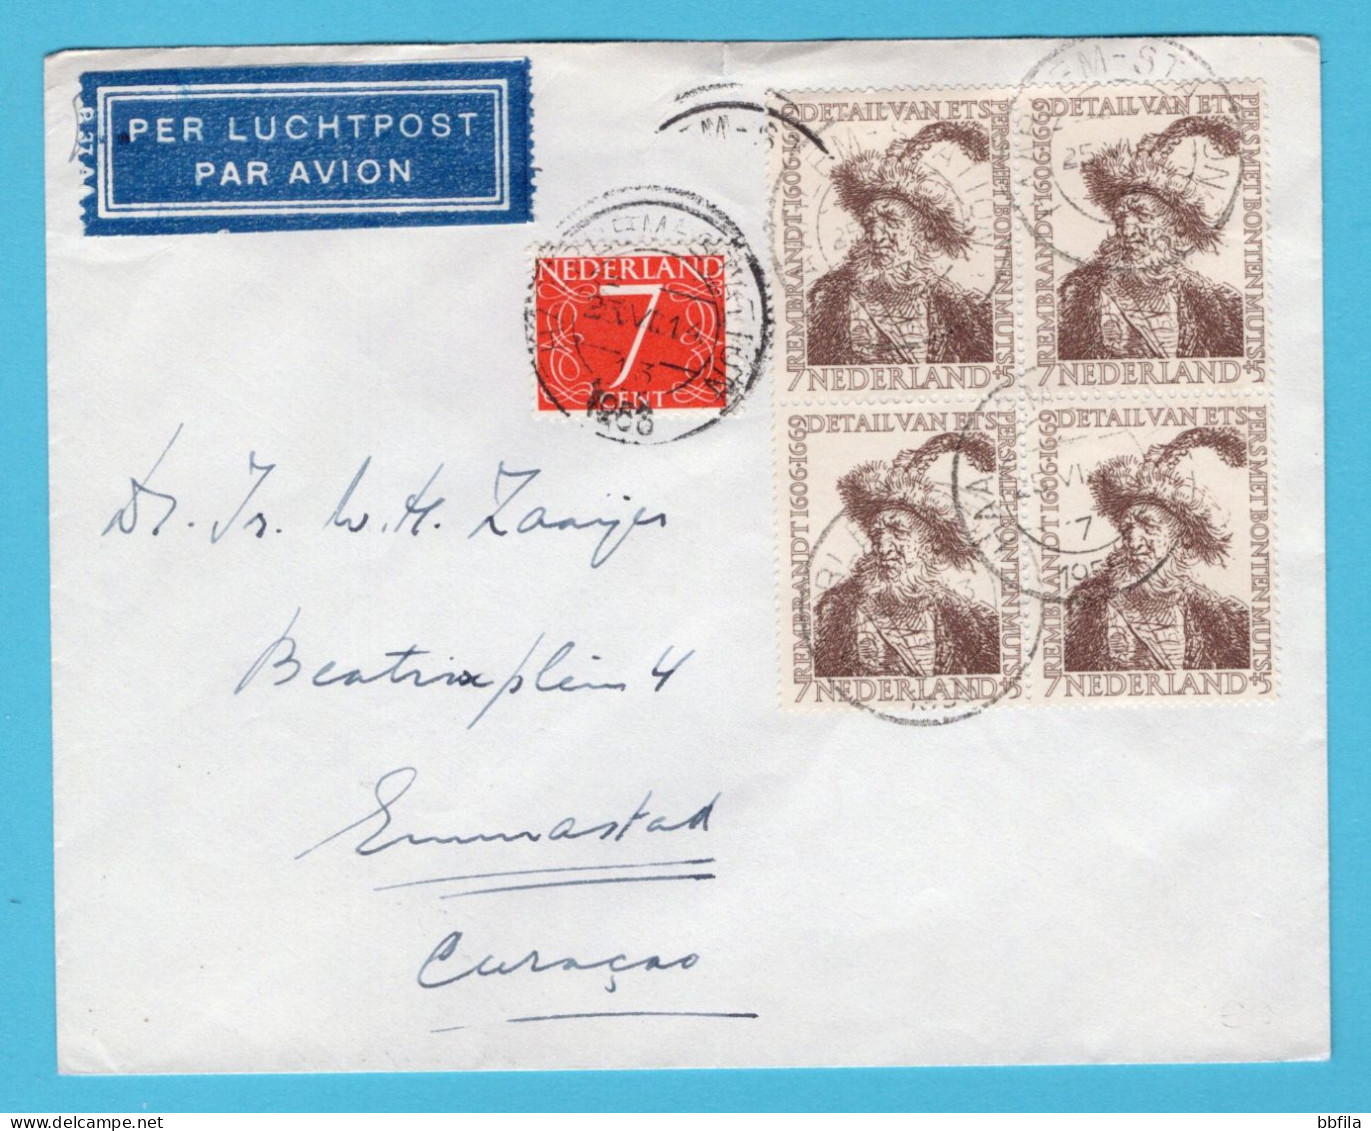 NEDERLAND Luchtpost Brief 1956 Haarlem Met Rembrandt 7ct In Blok Van 4 Naar Curaçao - Briefe U. Dokumente